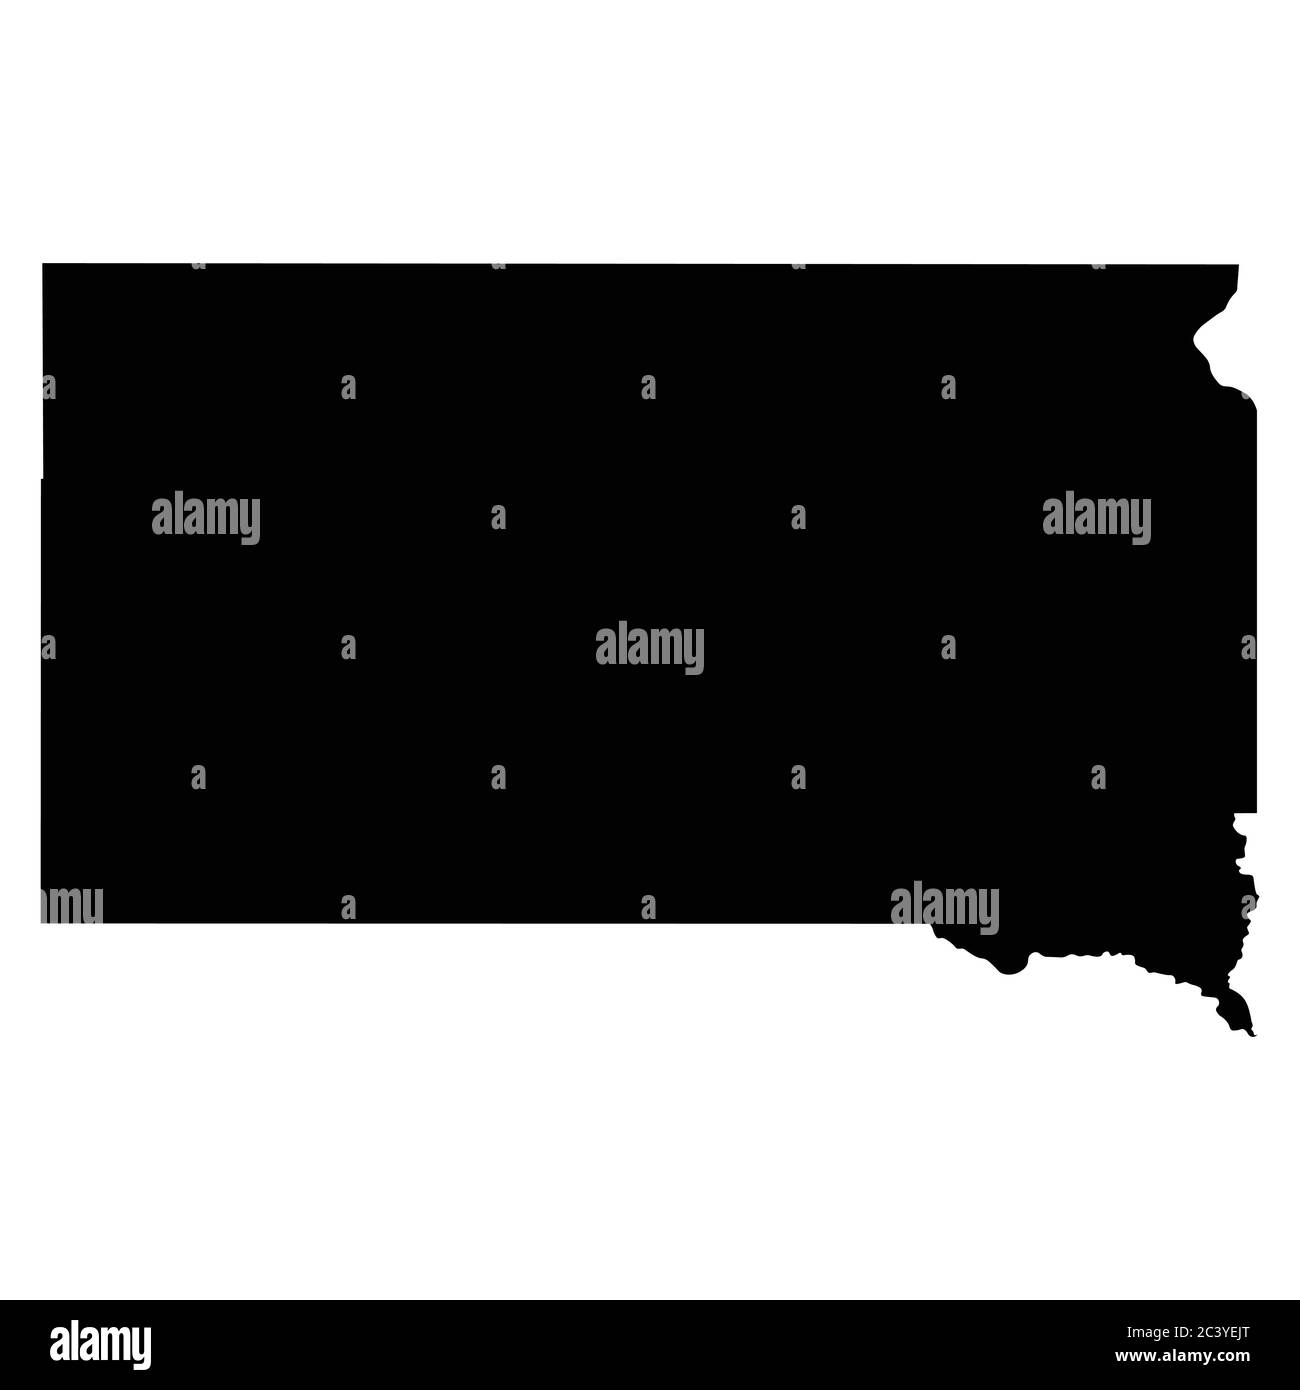 South Dakota SD State Map USA. Schwarze Silhouette solide Karte isolierte Karten auf weißem Hintergrund. EPS-Vektor Stock Vektor